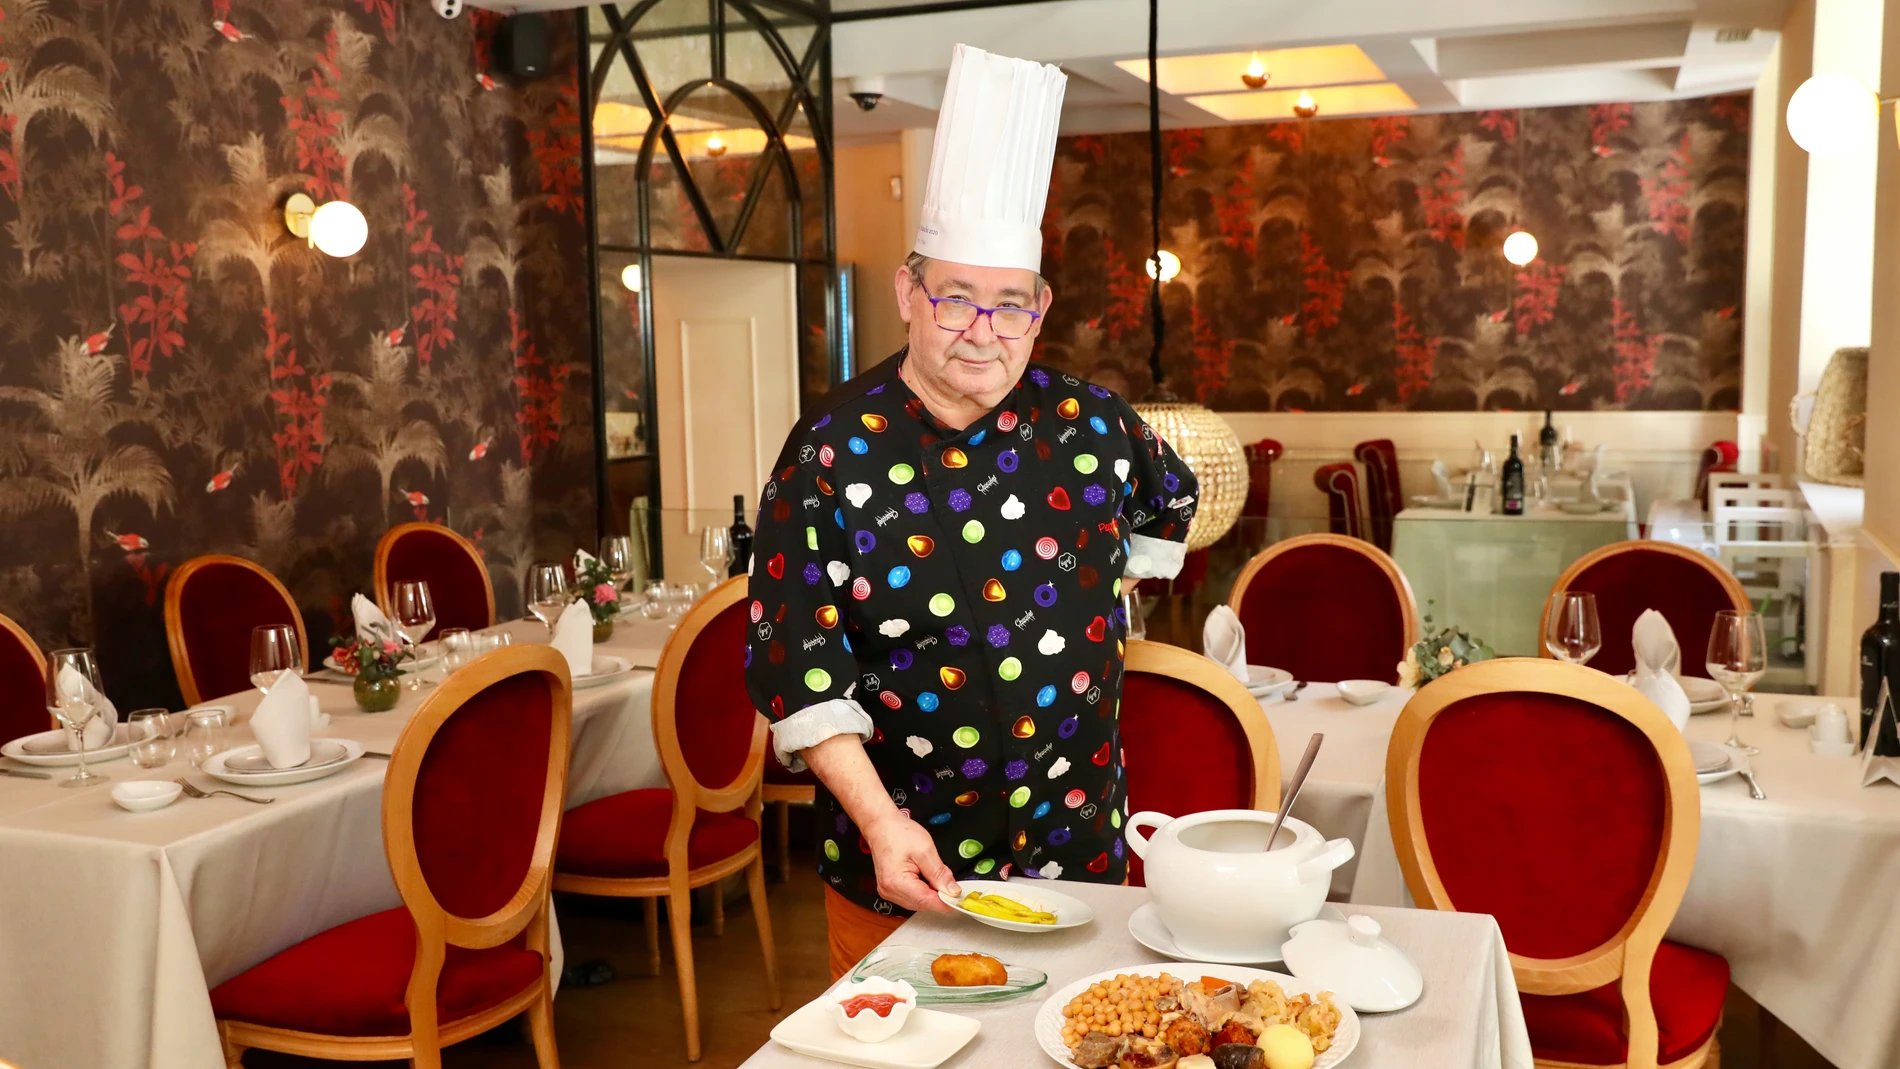 Restaurante La Clave y su cocinero Pepe Filloa. Su cocido ha sido premiado como el mejor de Madrid.